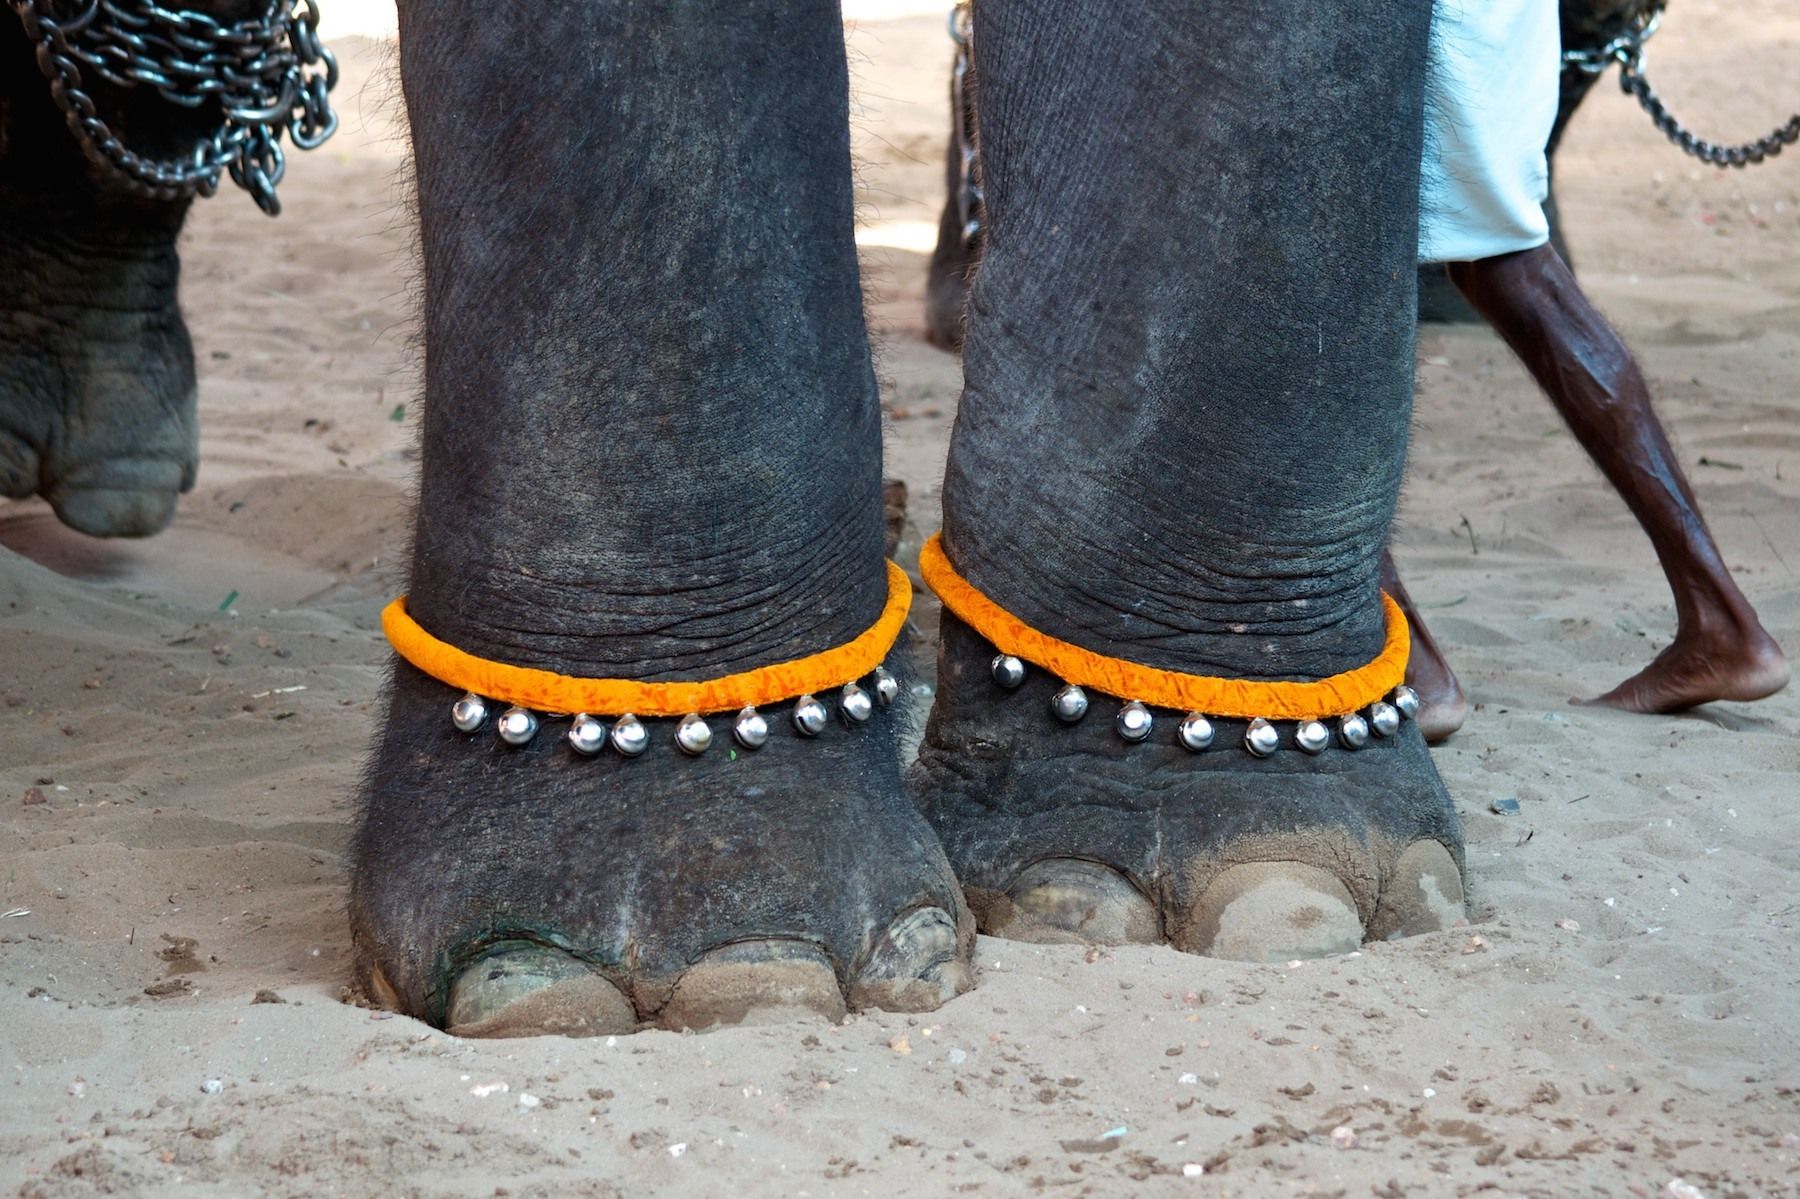 elephants in India